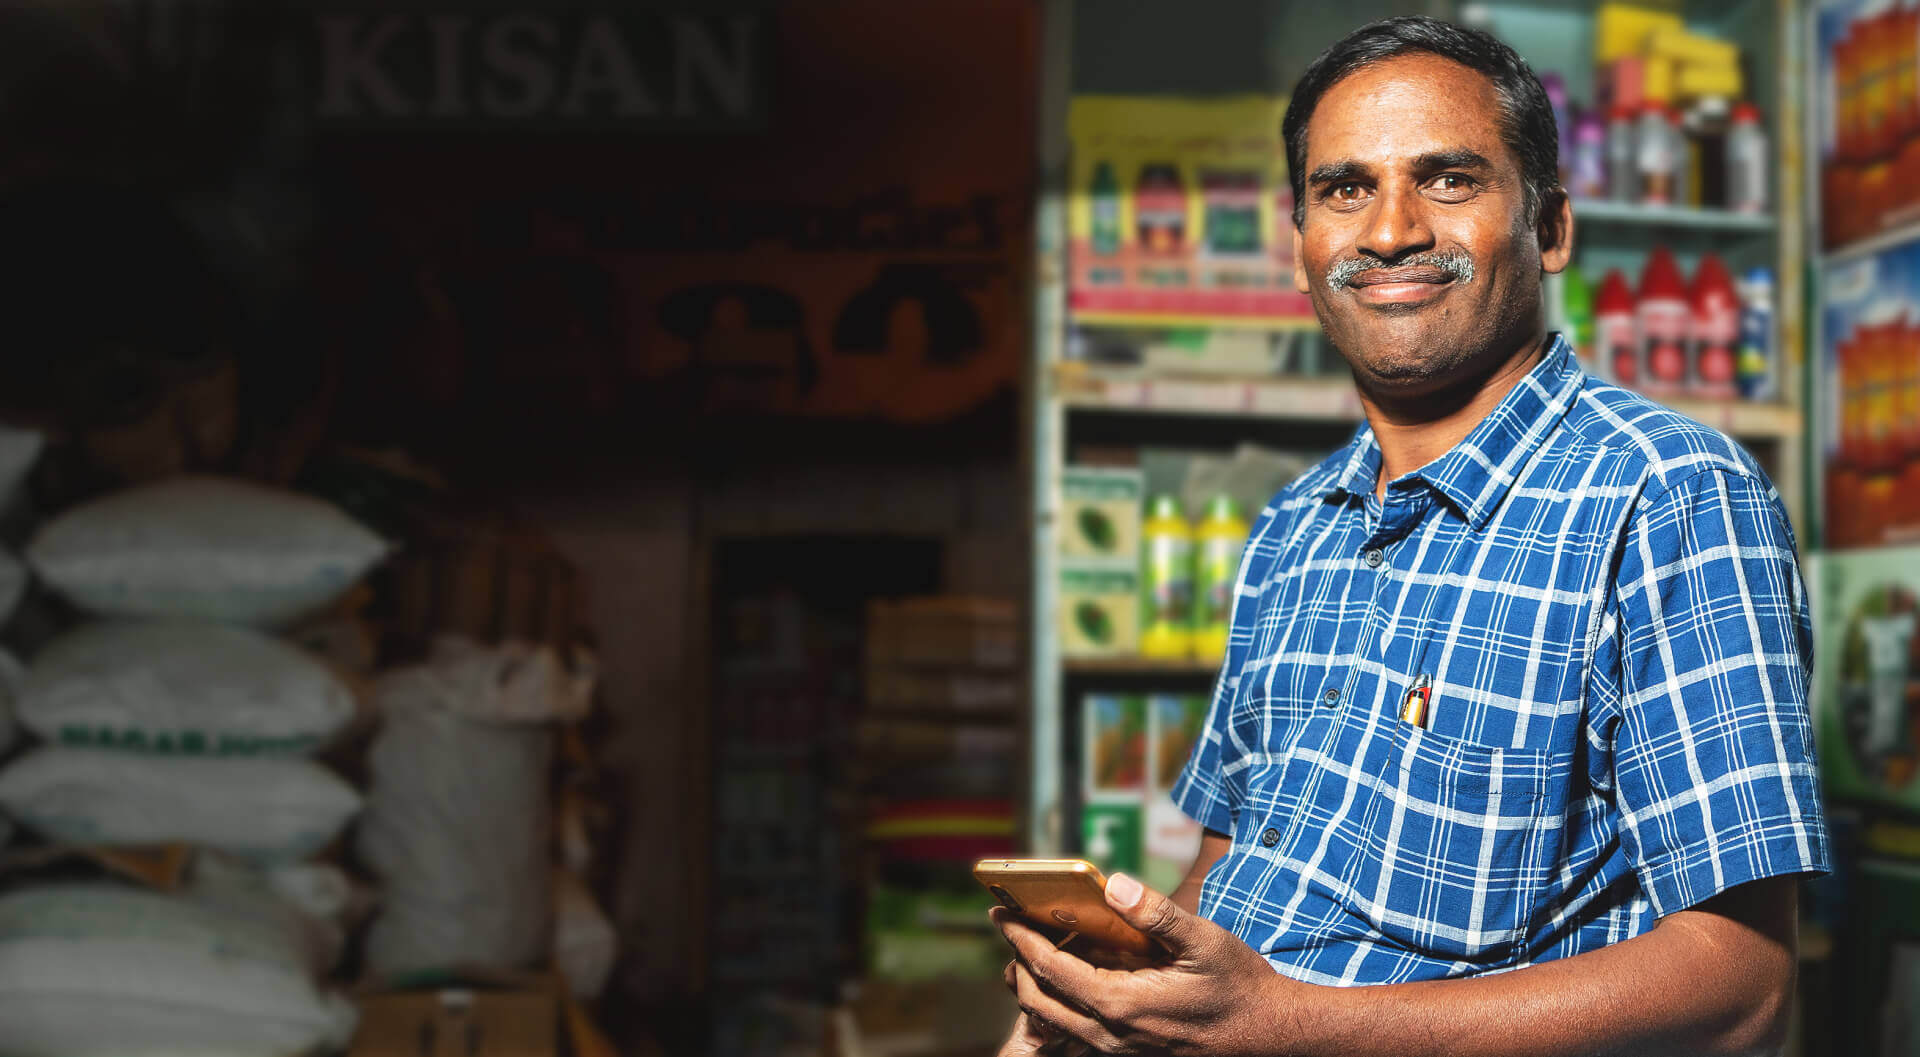 प्लेड शर्ट में कृषि उत्पादों का एक विक्रेता स्मार्टफ़ोन हाथ में लिए अपनी दुकान में आत्मविश्वास के साथ खड़ा है। उसके चेहरे पर संतोष झलक रहा है।